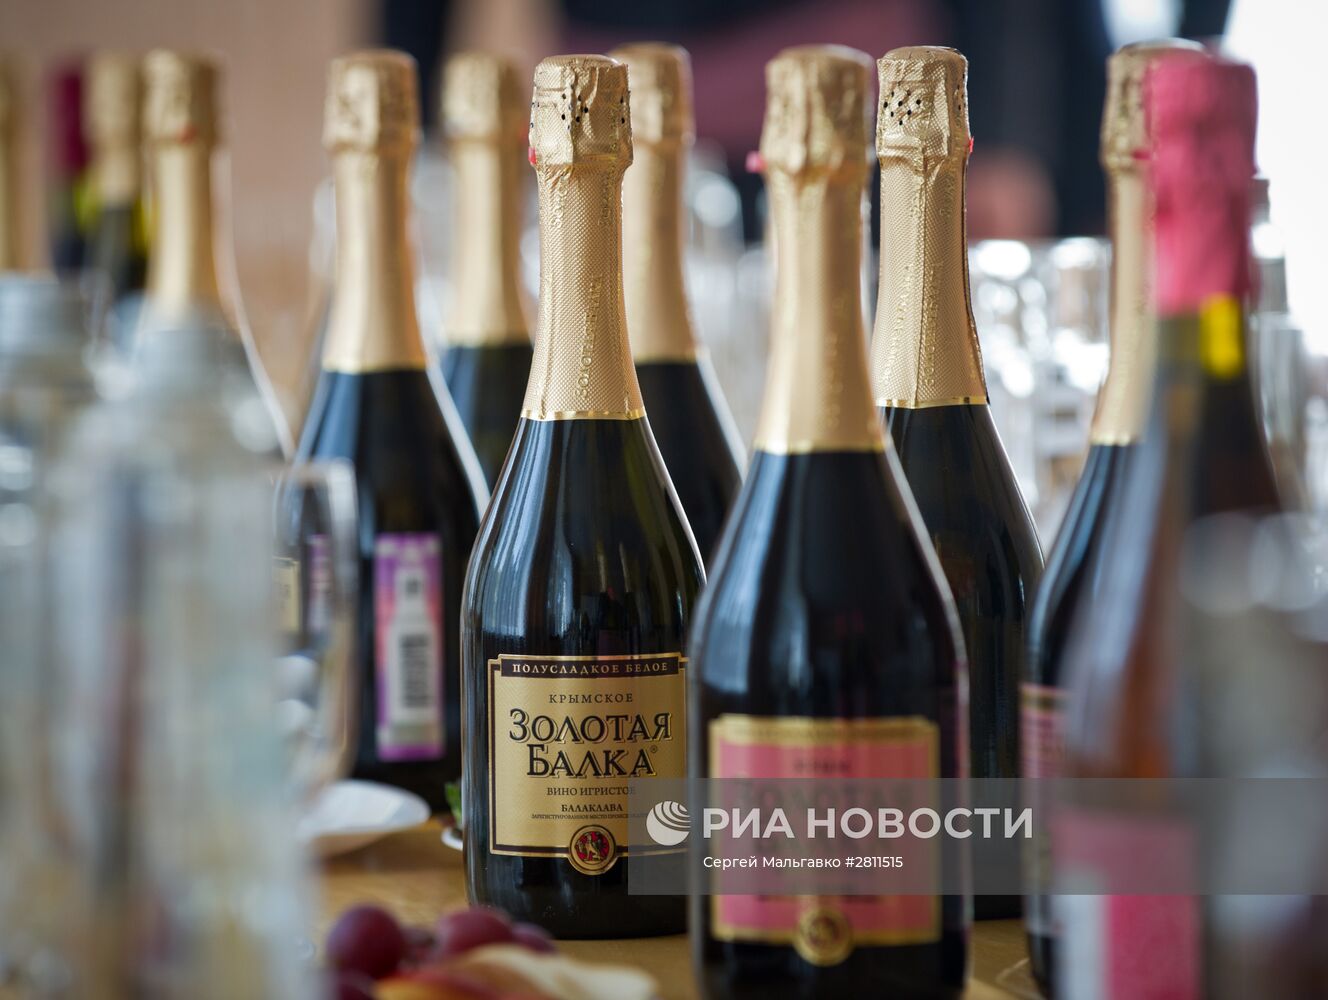 Производство вина на предприятии "Золотая балка" в Крыму